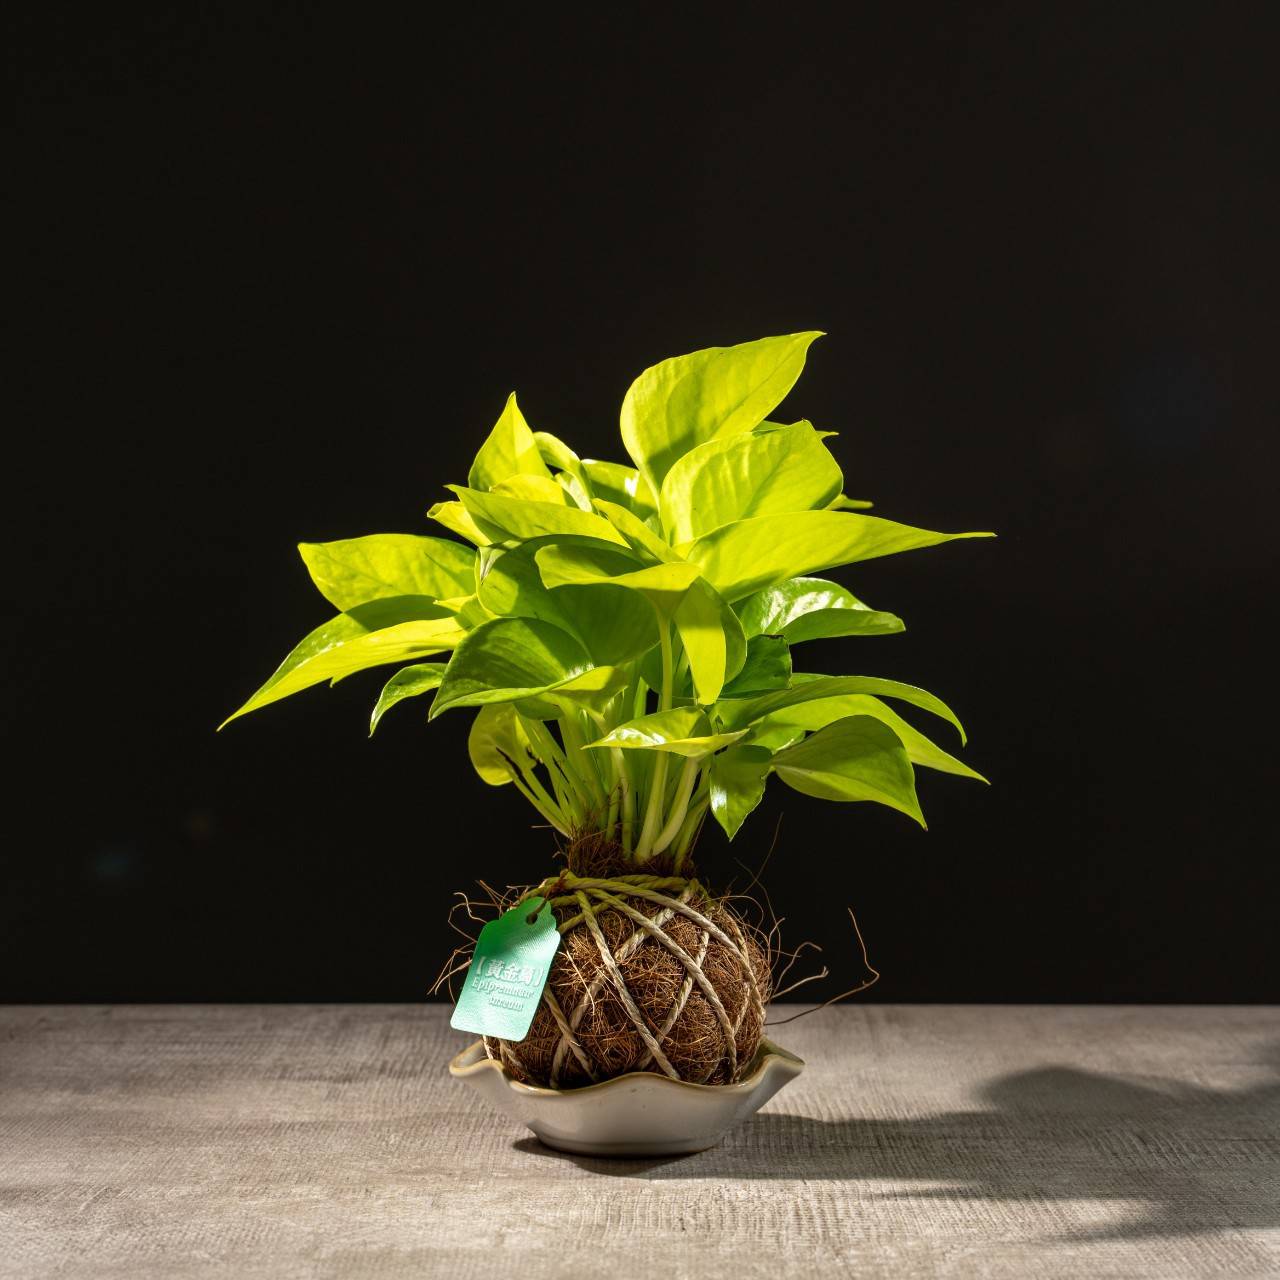 苔球植物 陽光黃金葛水苔球 苔玉 適合室內植物 辦公室植物 交換禮物 情人節禮物